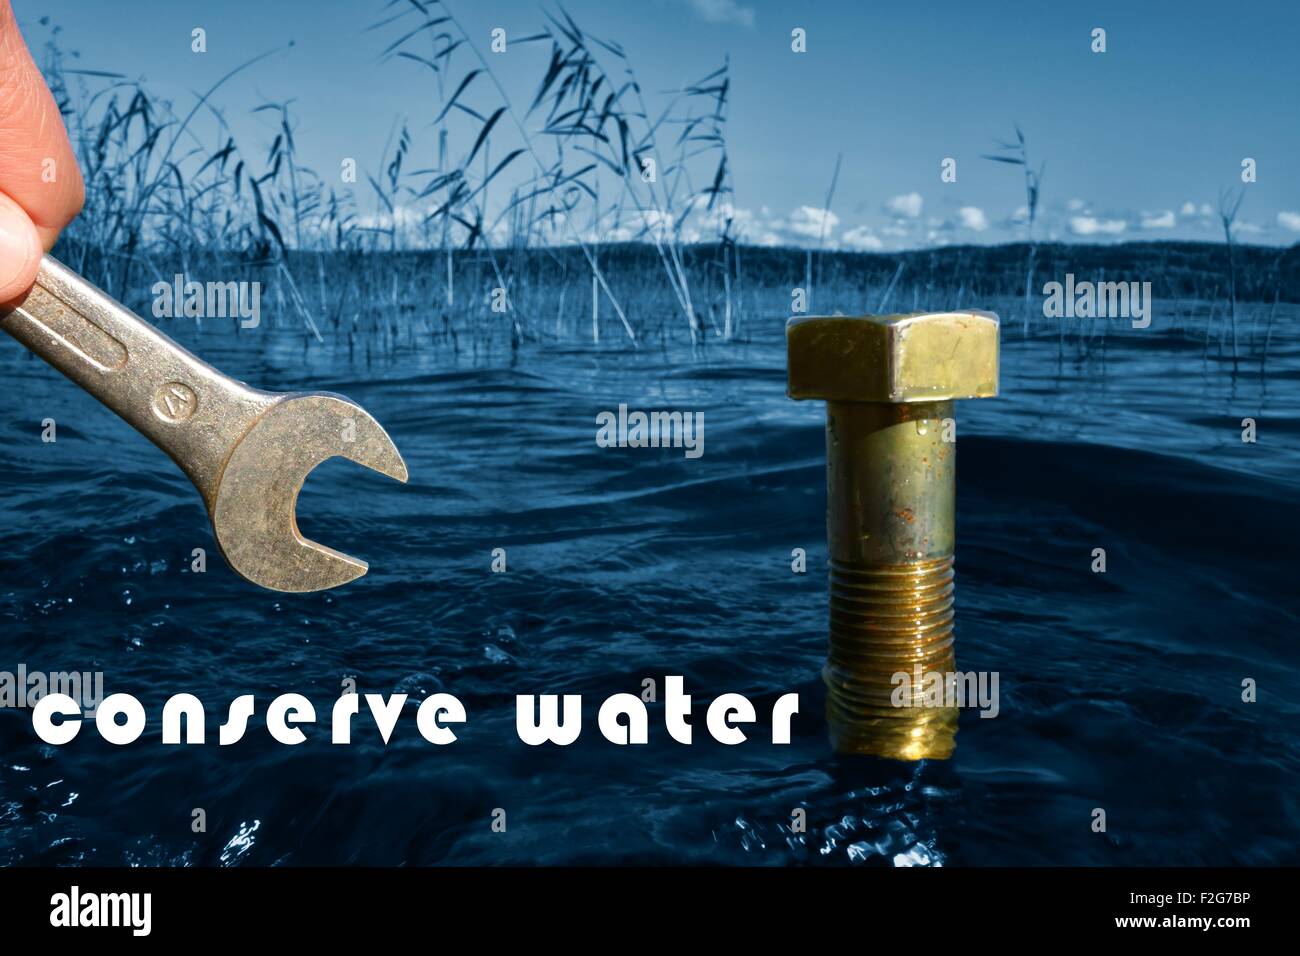 Conserver l'eau conceptual image Banque D'Images